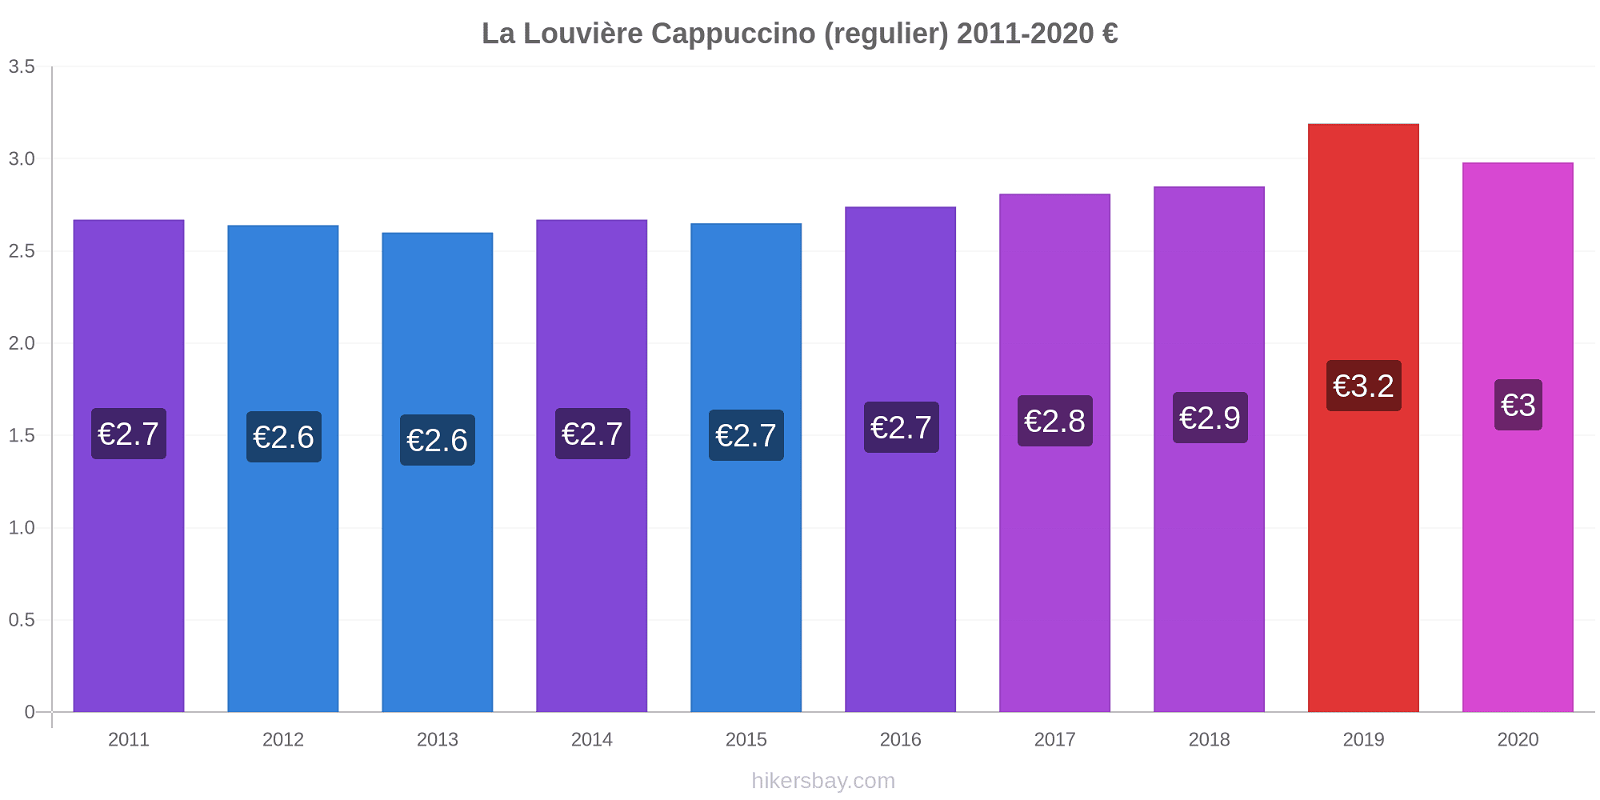 La Louvière prijswijzigingen Cappuccino (regelmatige) hikersbay.com